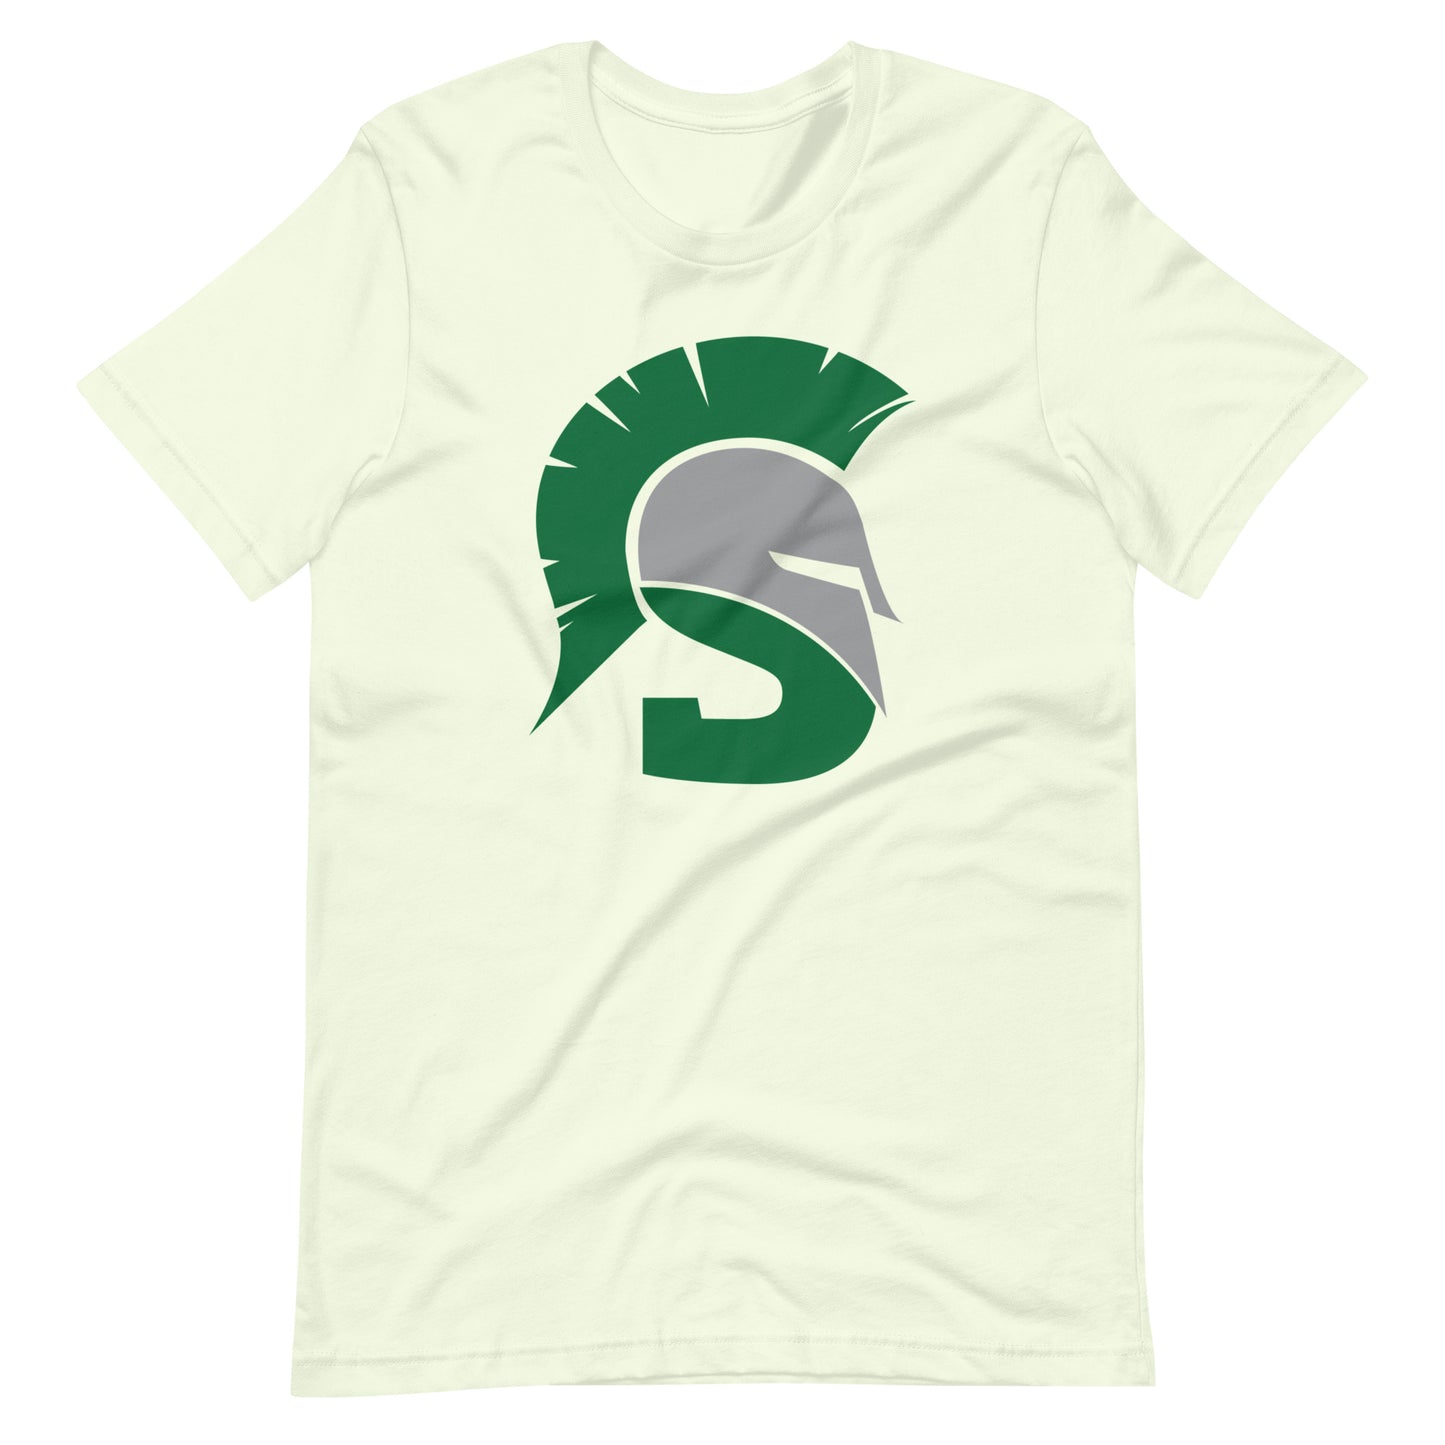 Big Spartan Adult T-Shirt